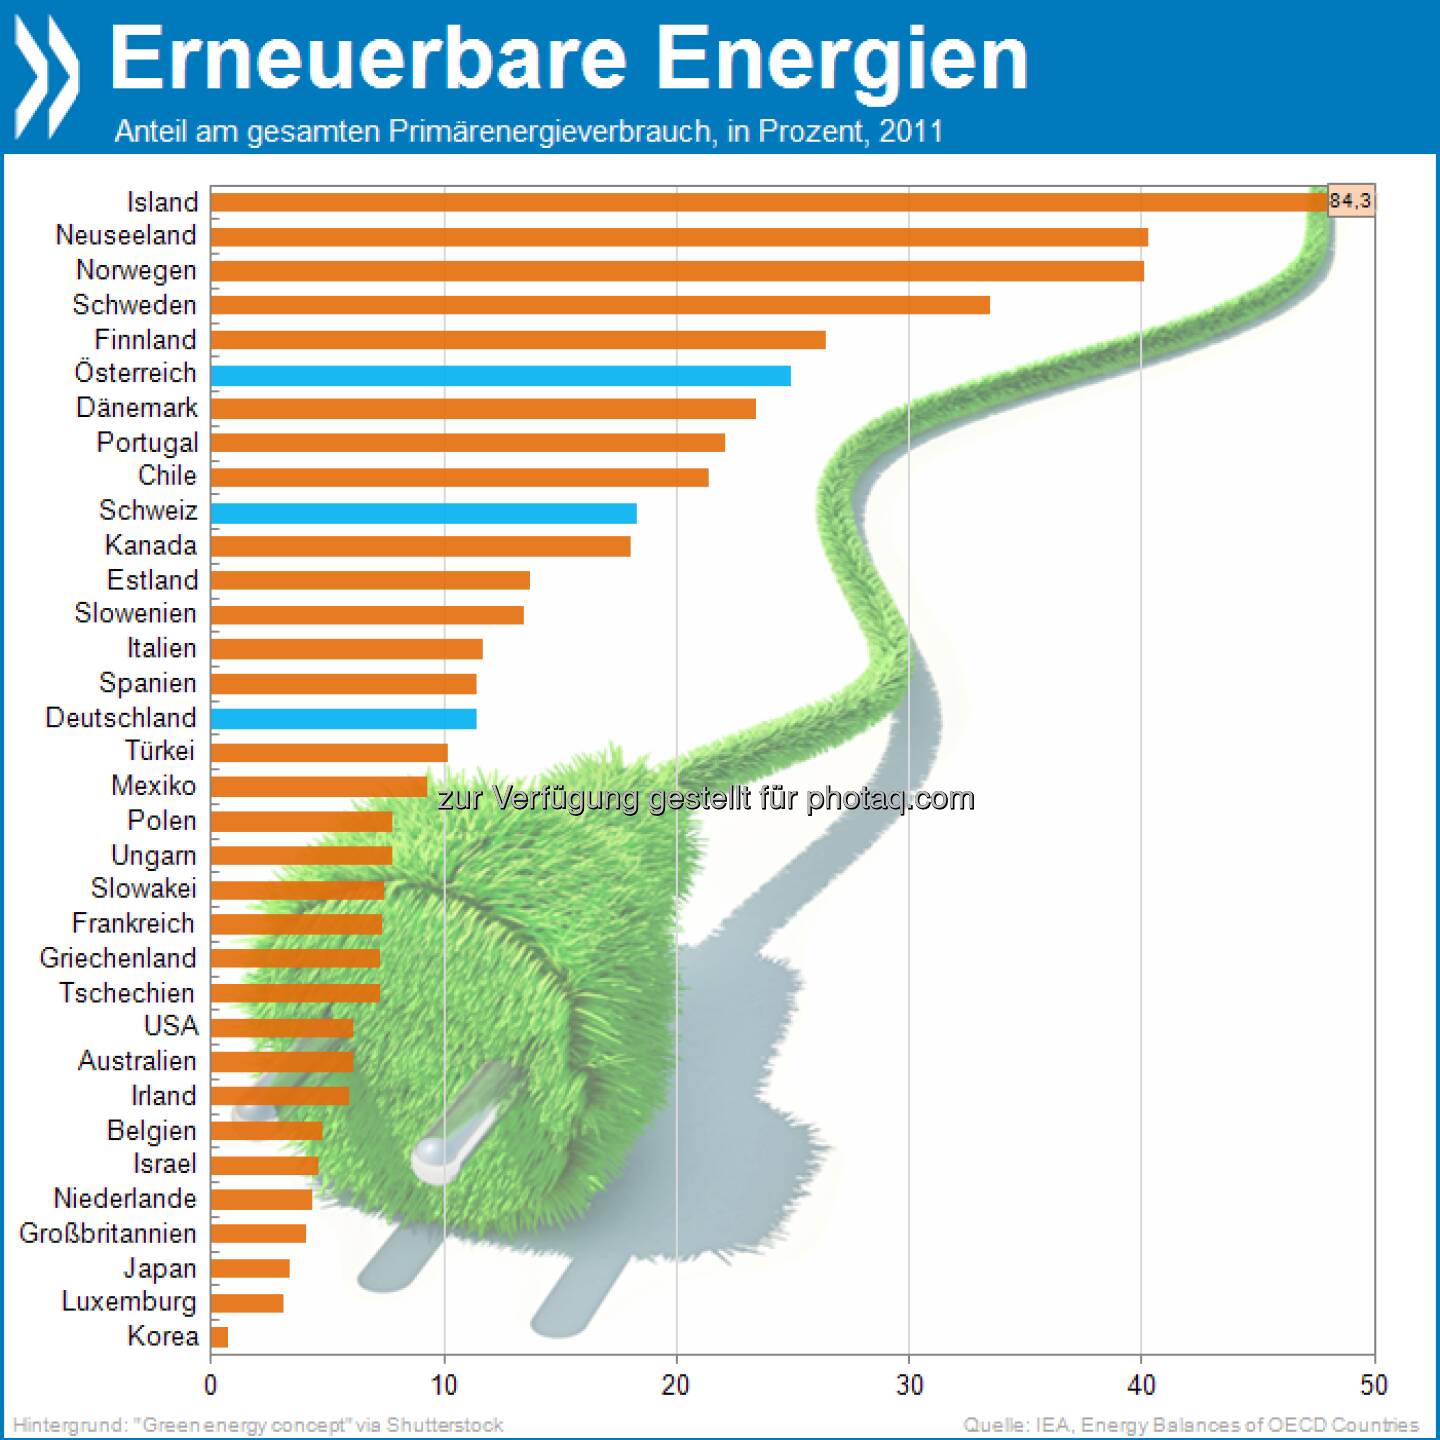 Nordic green: Der Anteil erneuerbarer Energien am gesamten Primärenergieverbrauch erreicht nur in der Hälfte aller OECD-Länder zehn Prozent oder mehr. In der Spitze dominieren die nordischen Länder.

Mehr unter: http://bit.ly/14C6edN (OECD Factbook 2013, S.116f)